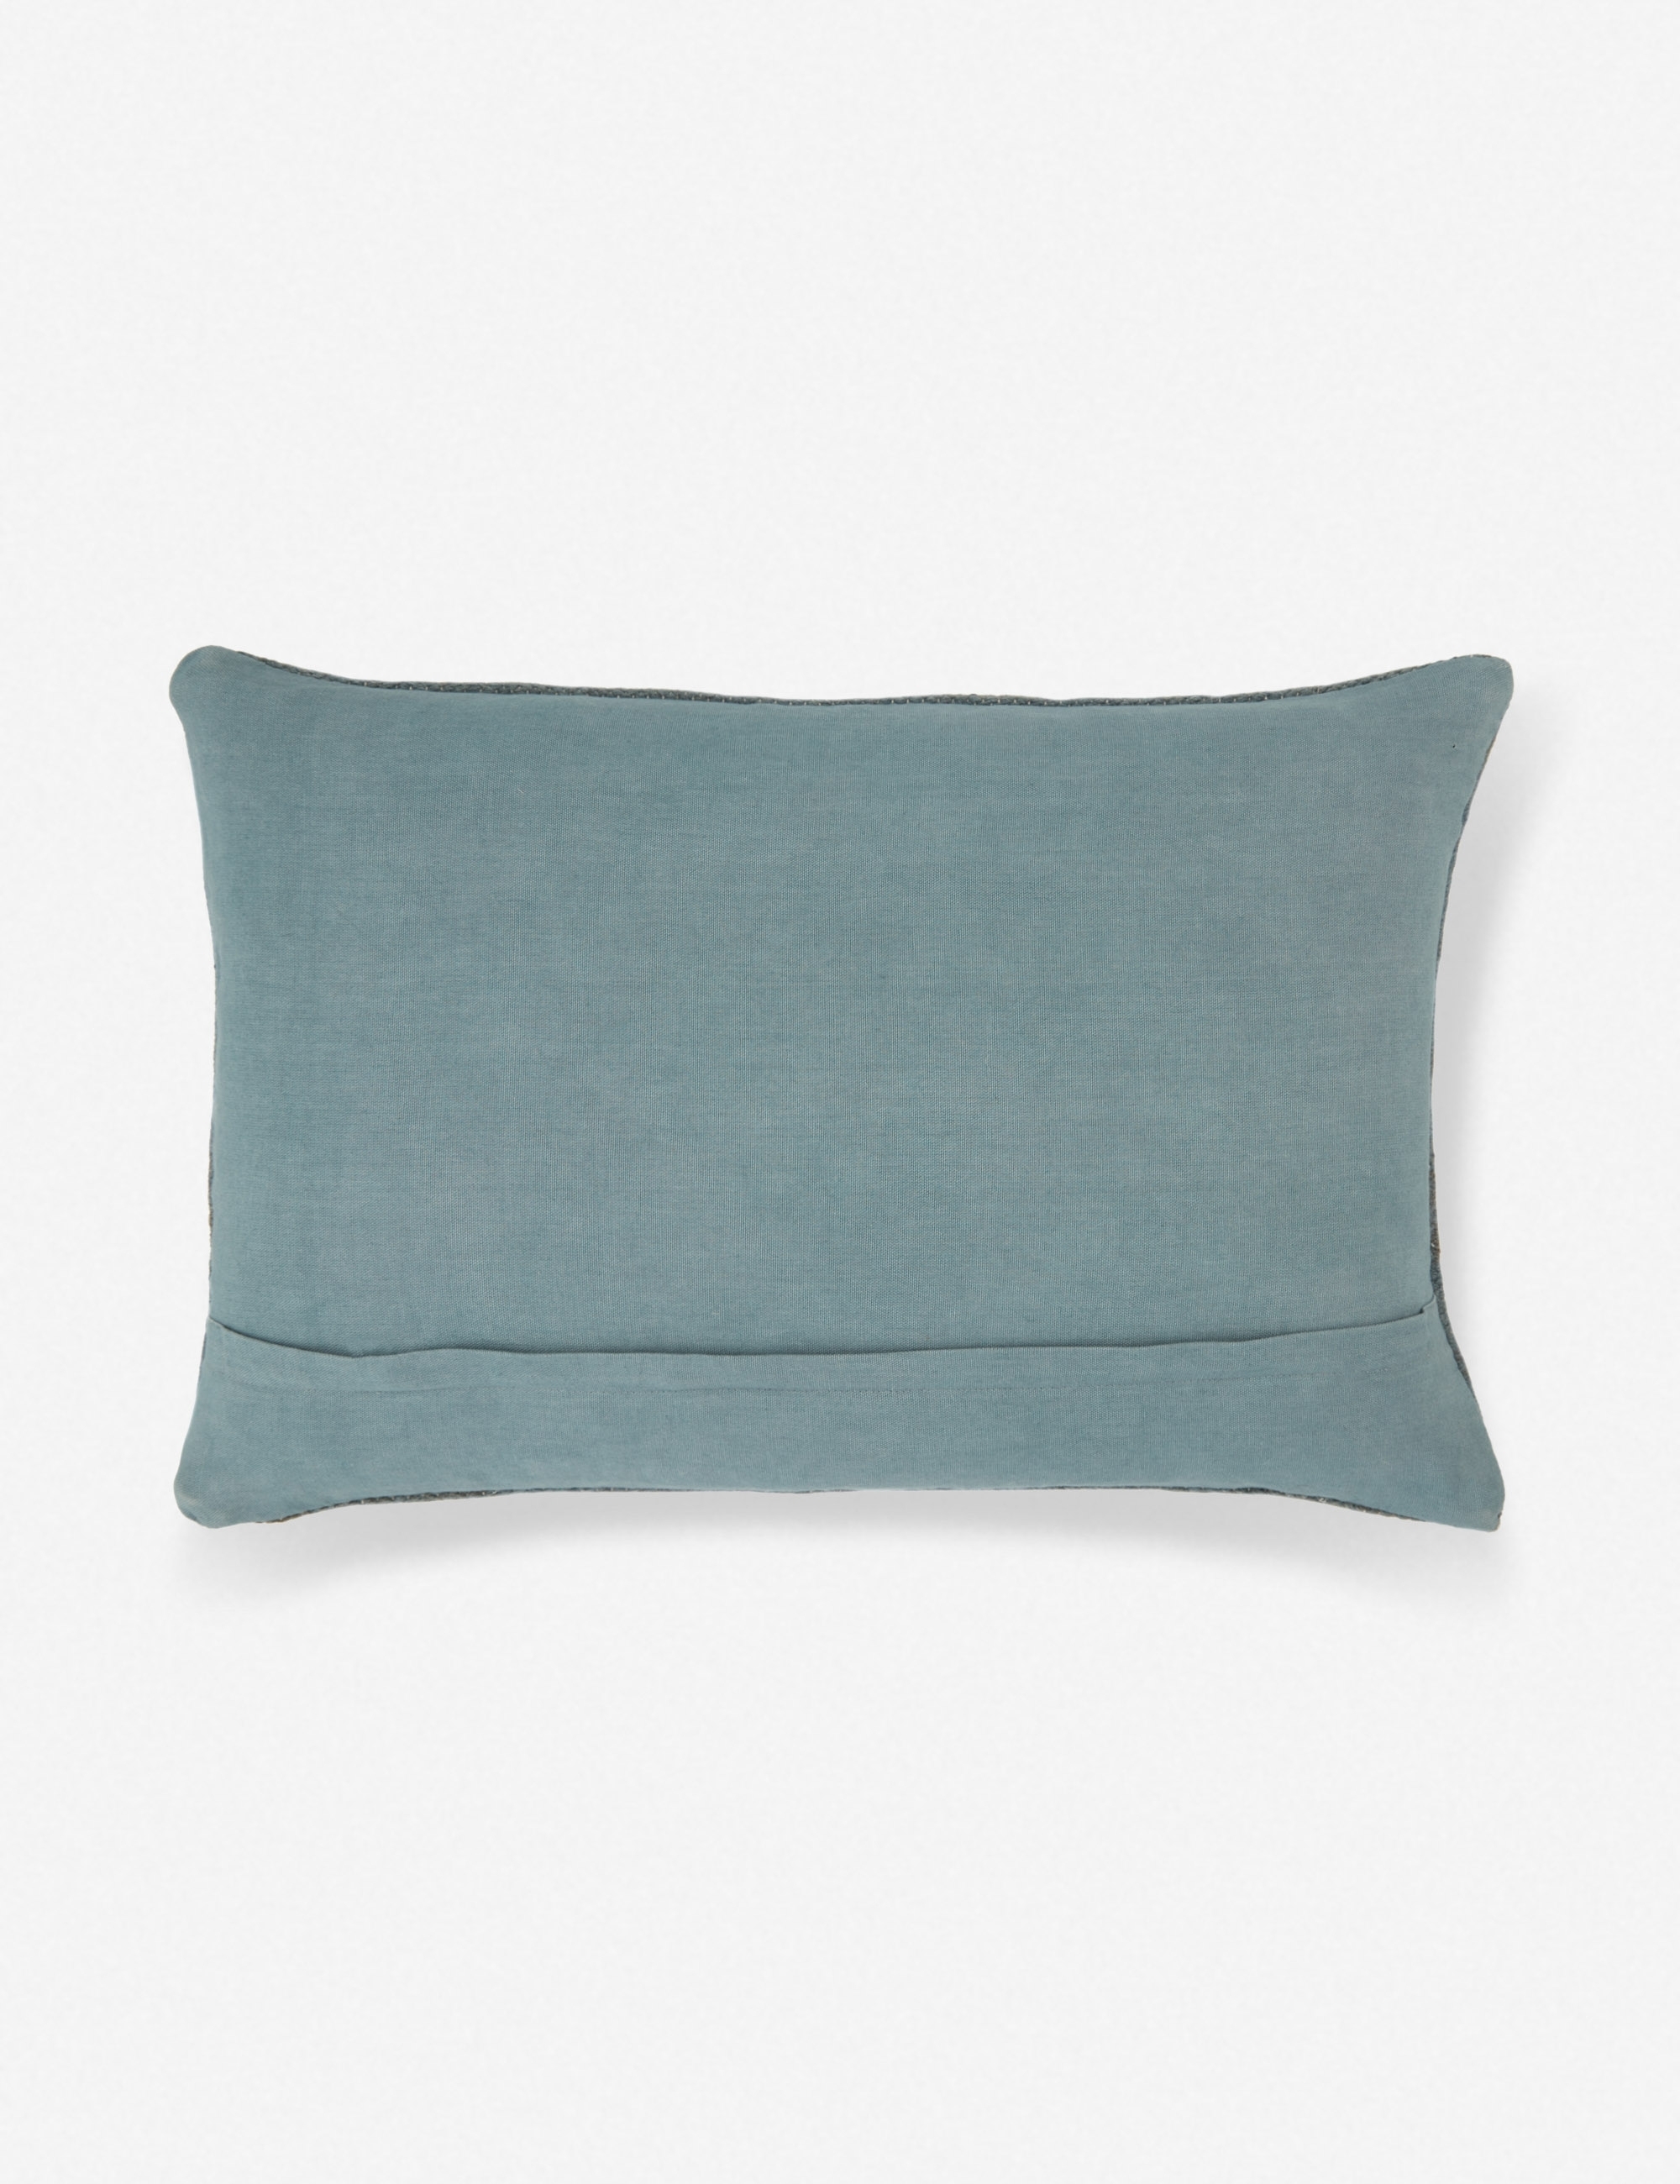 Indigo Lumbar Pillow - Image 2